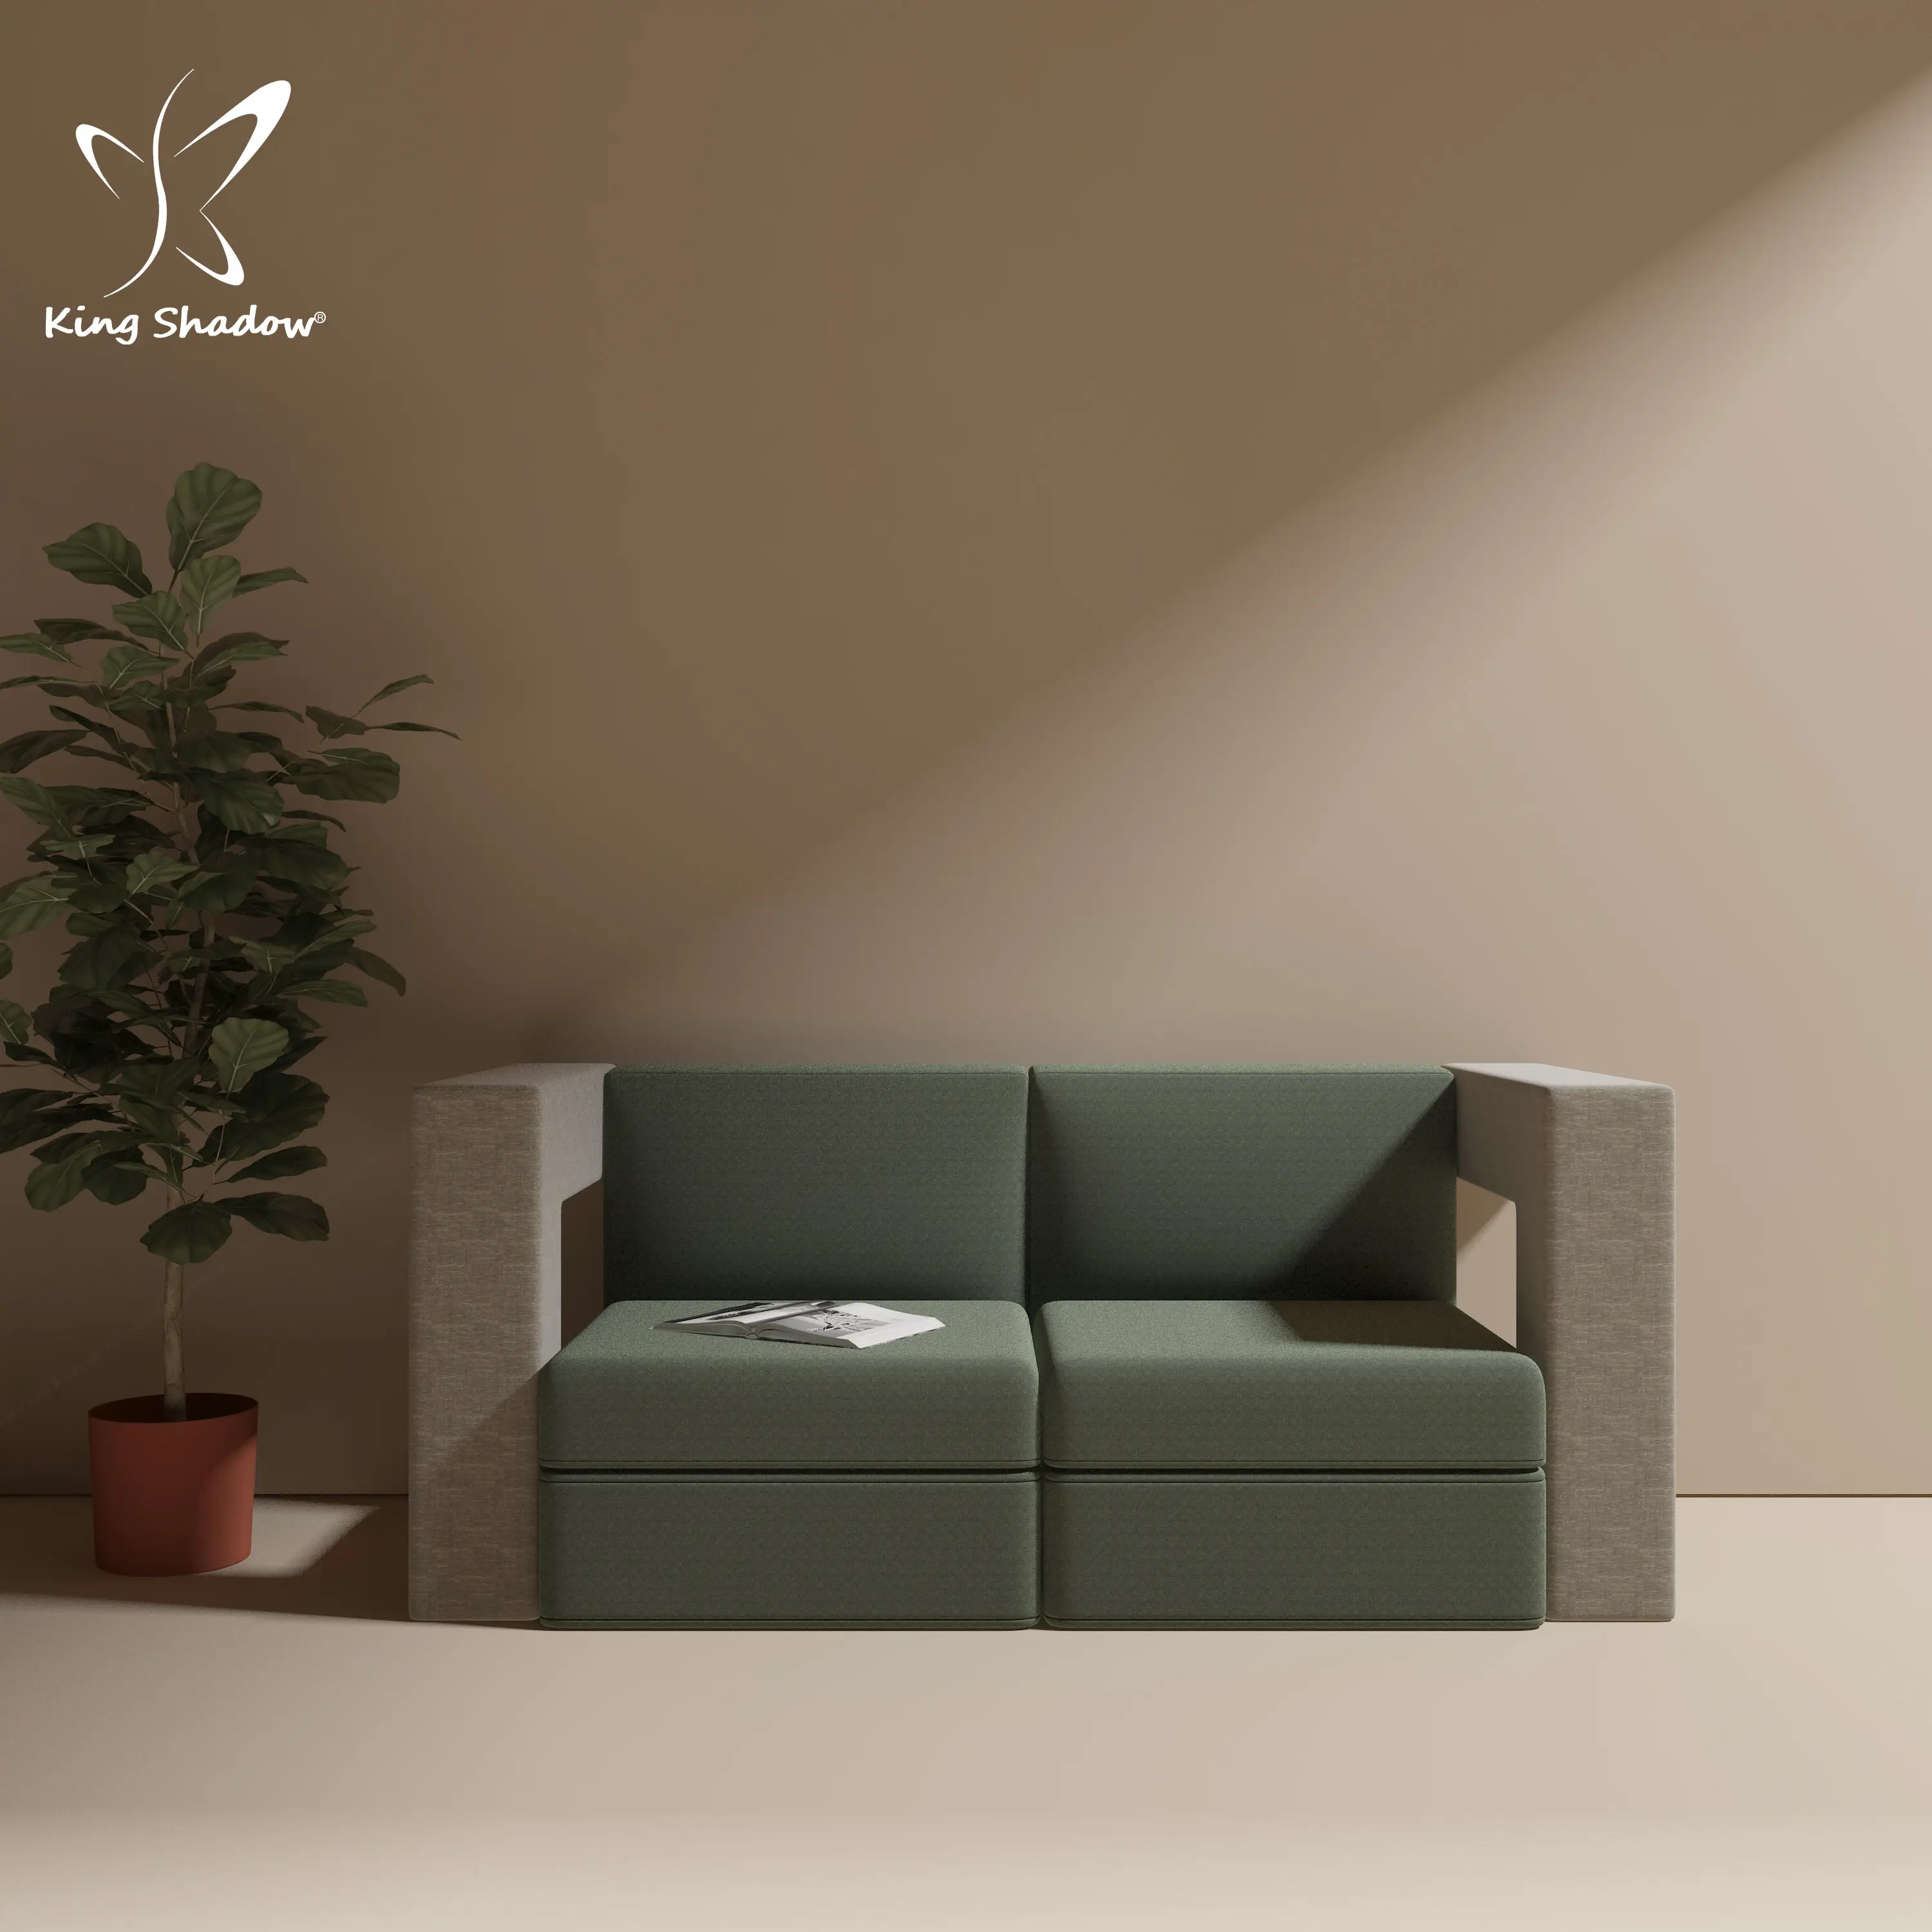 الملك الظل تصميم بسيط مكتب المنزل أريكة لغرفة المعيشة الأثاث أريكة قطاعات الانتظار الأرائك